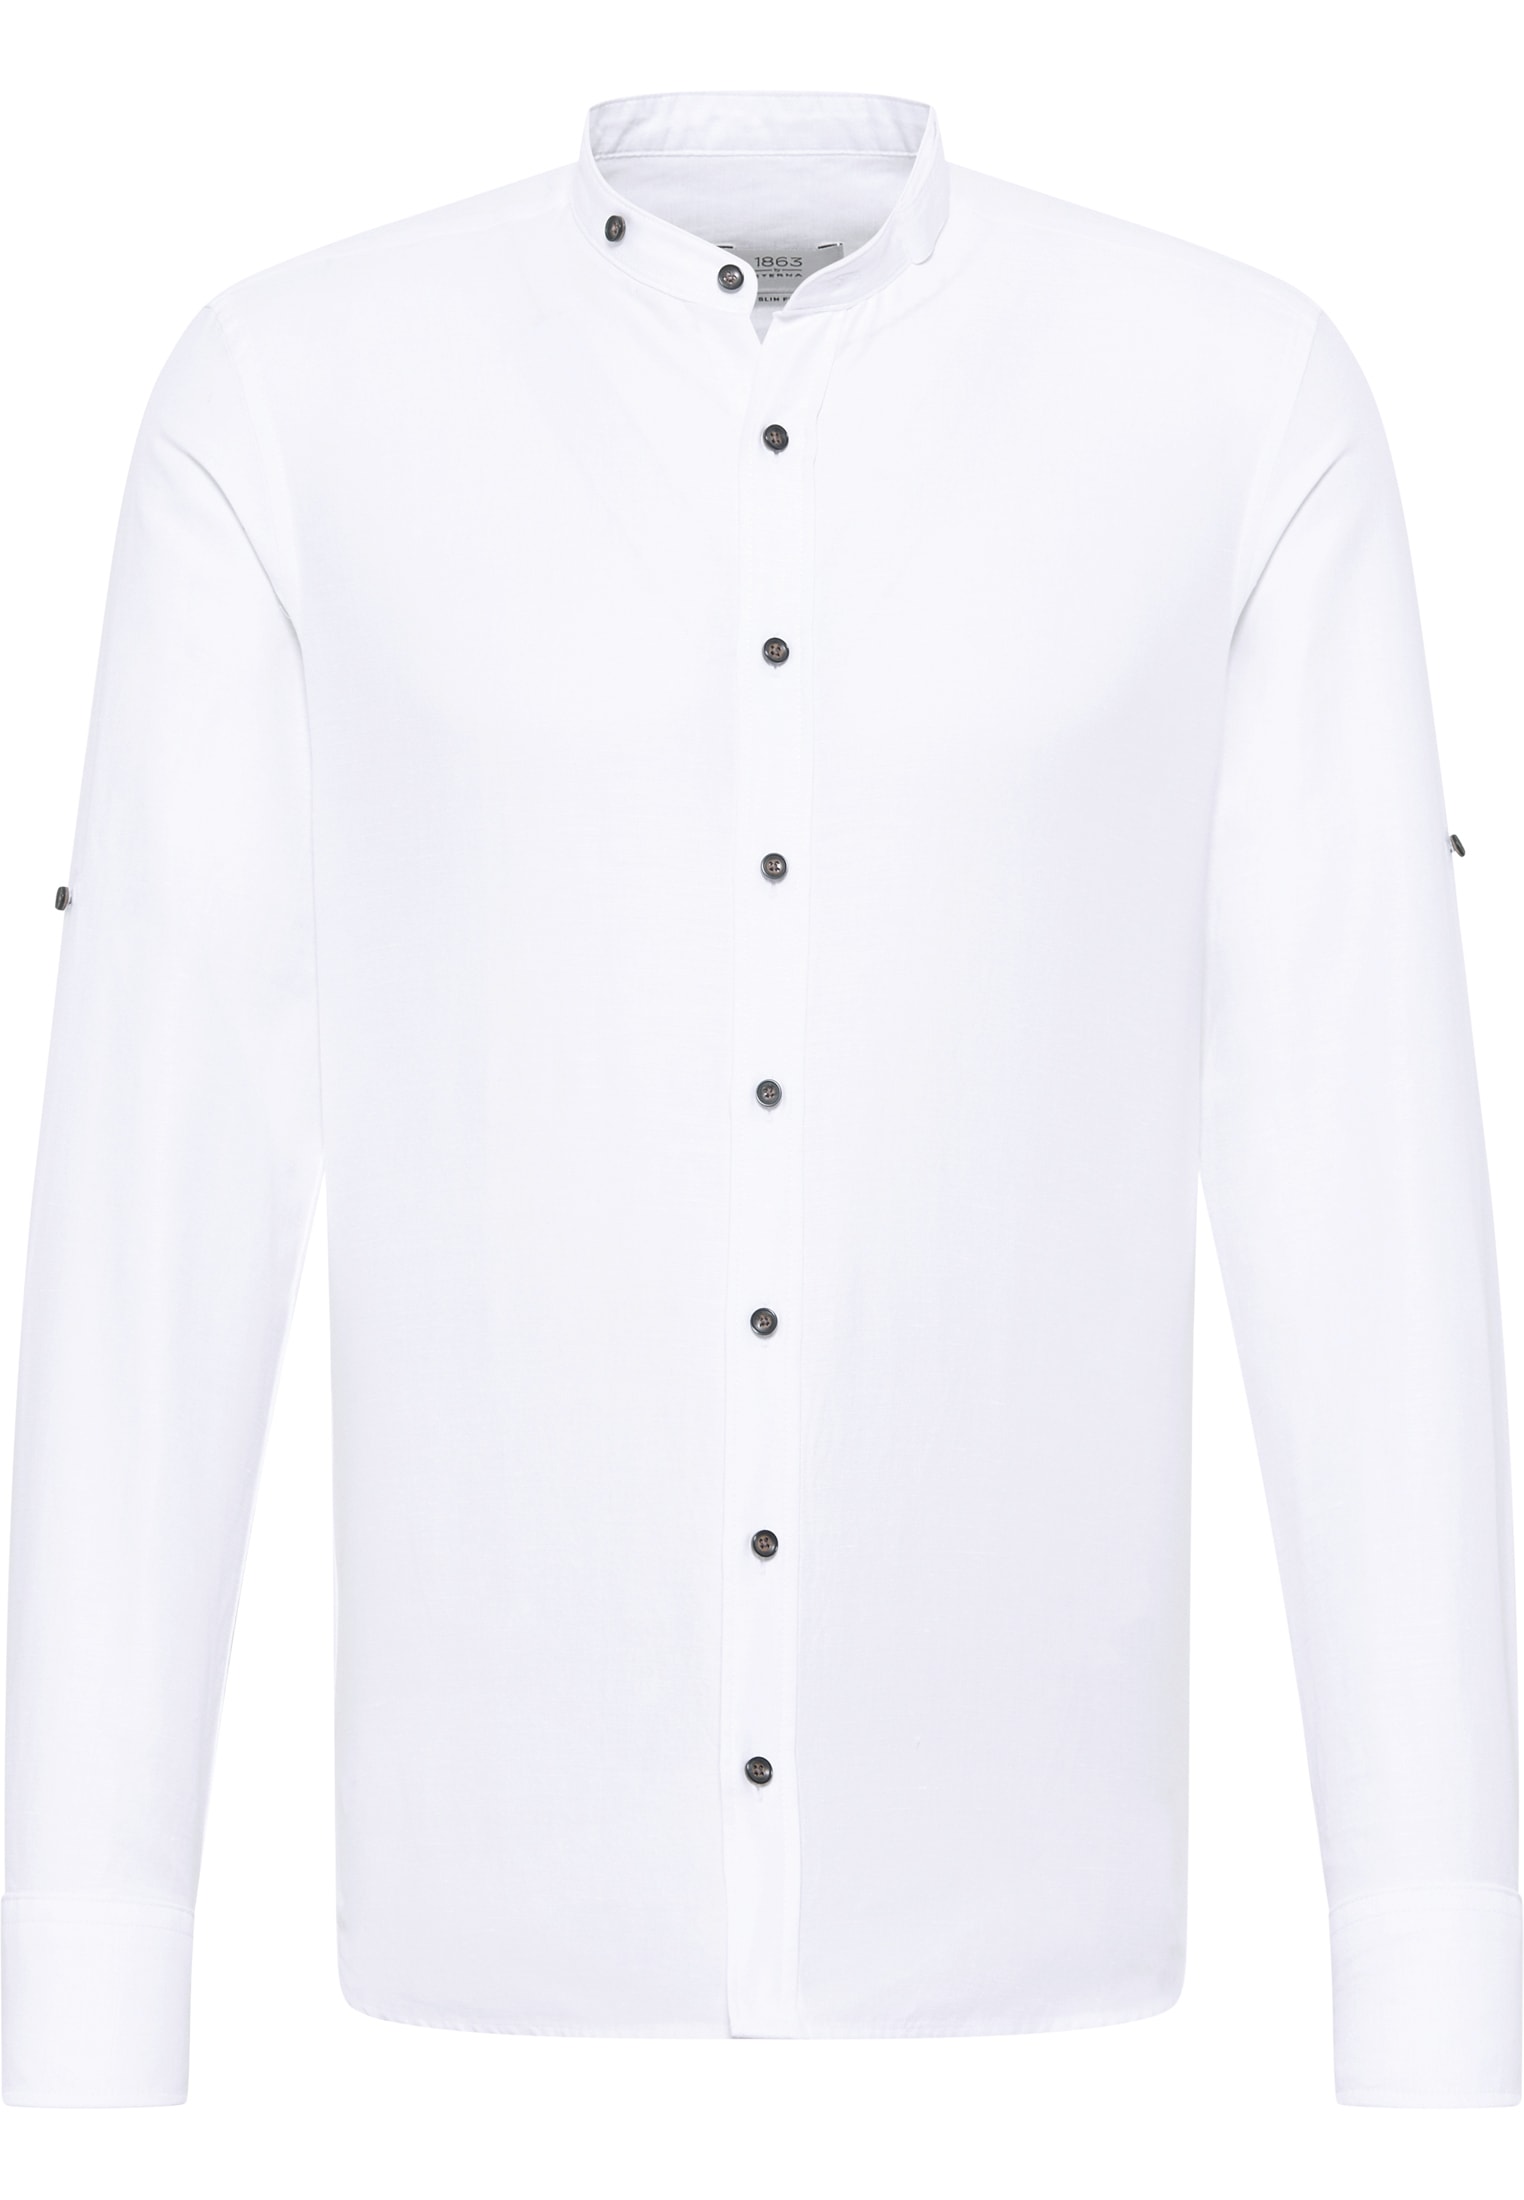 in weiß | | 1SH12593-00-01-40-1/1 Linen weiß unifarben Shirt FIT 40 Langarm | | SLIM